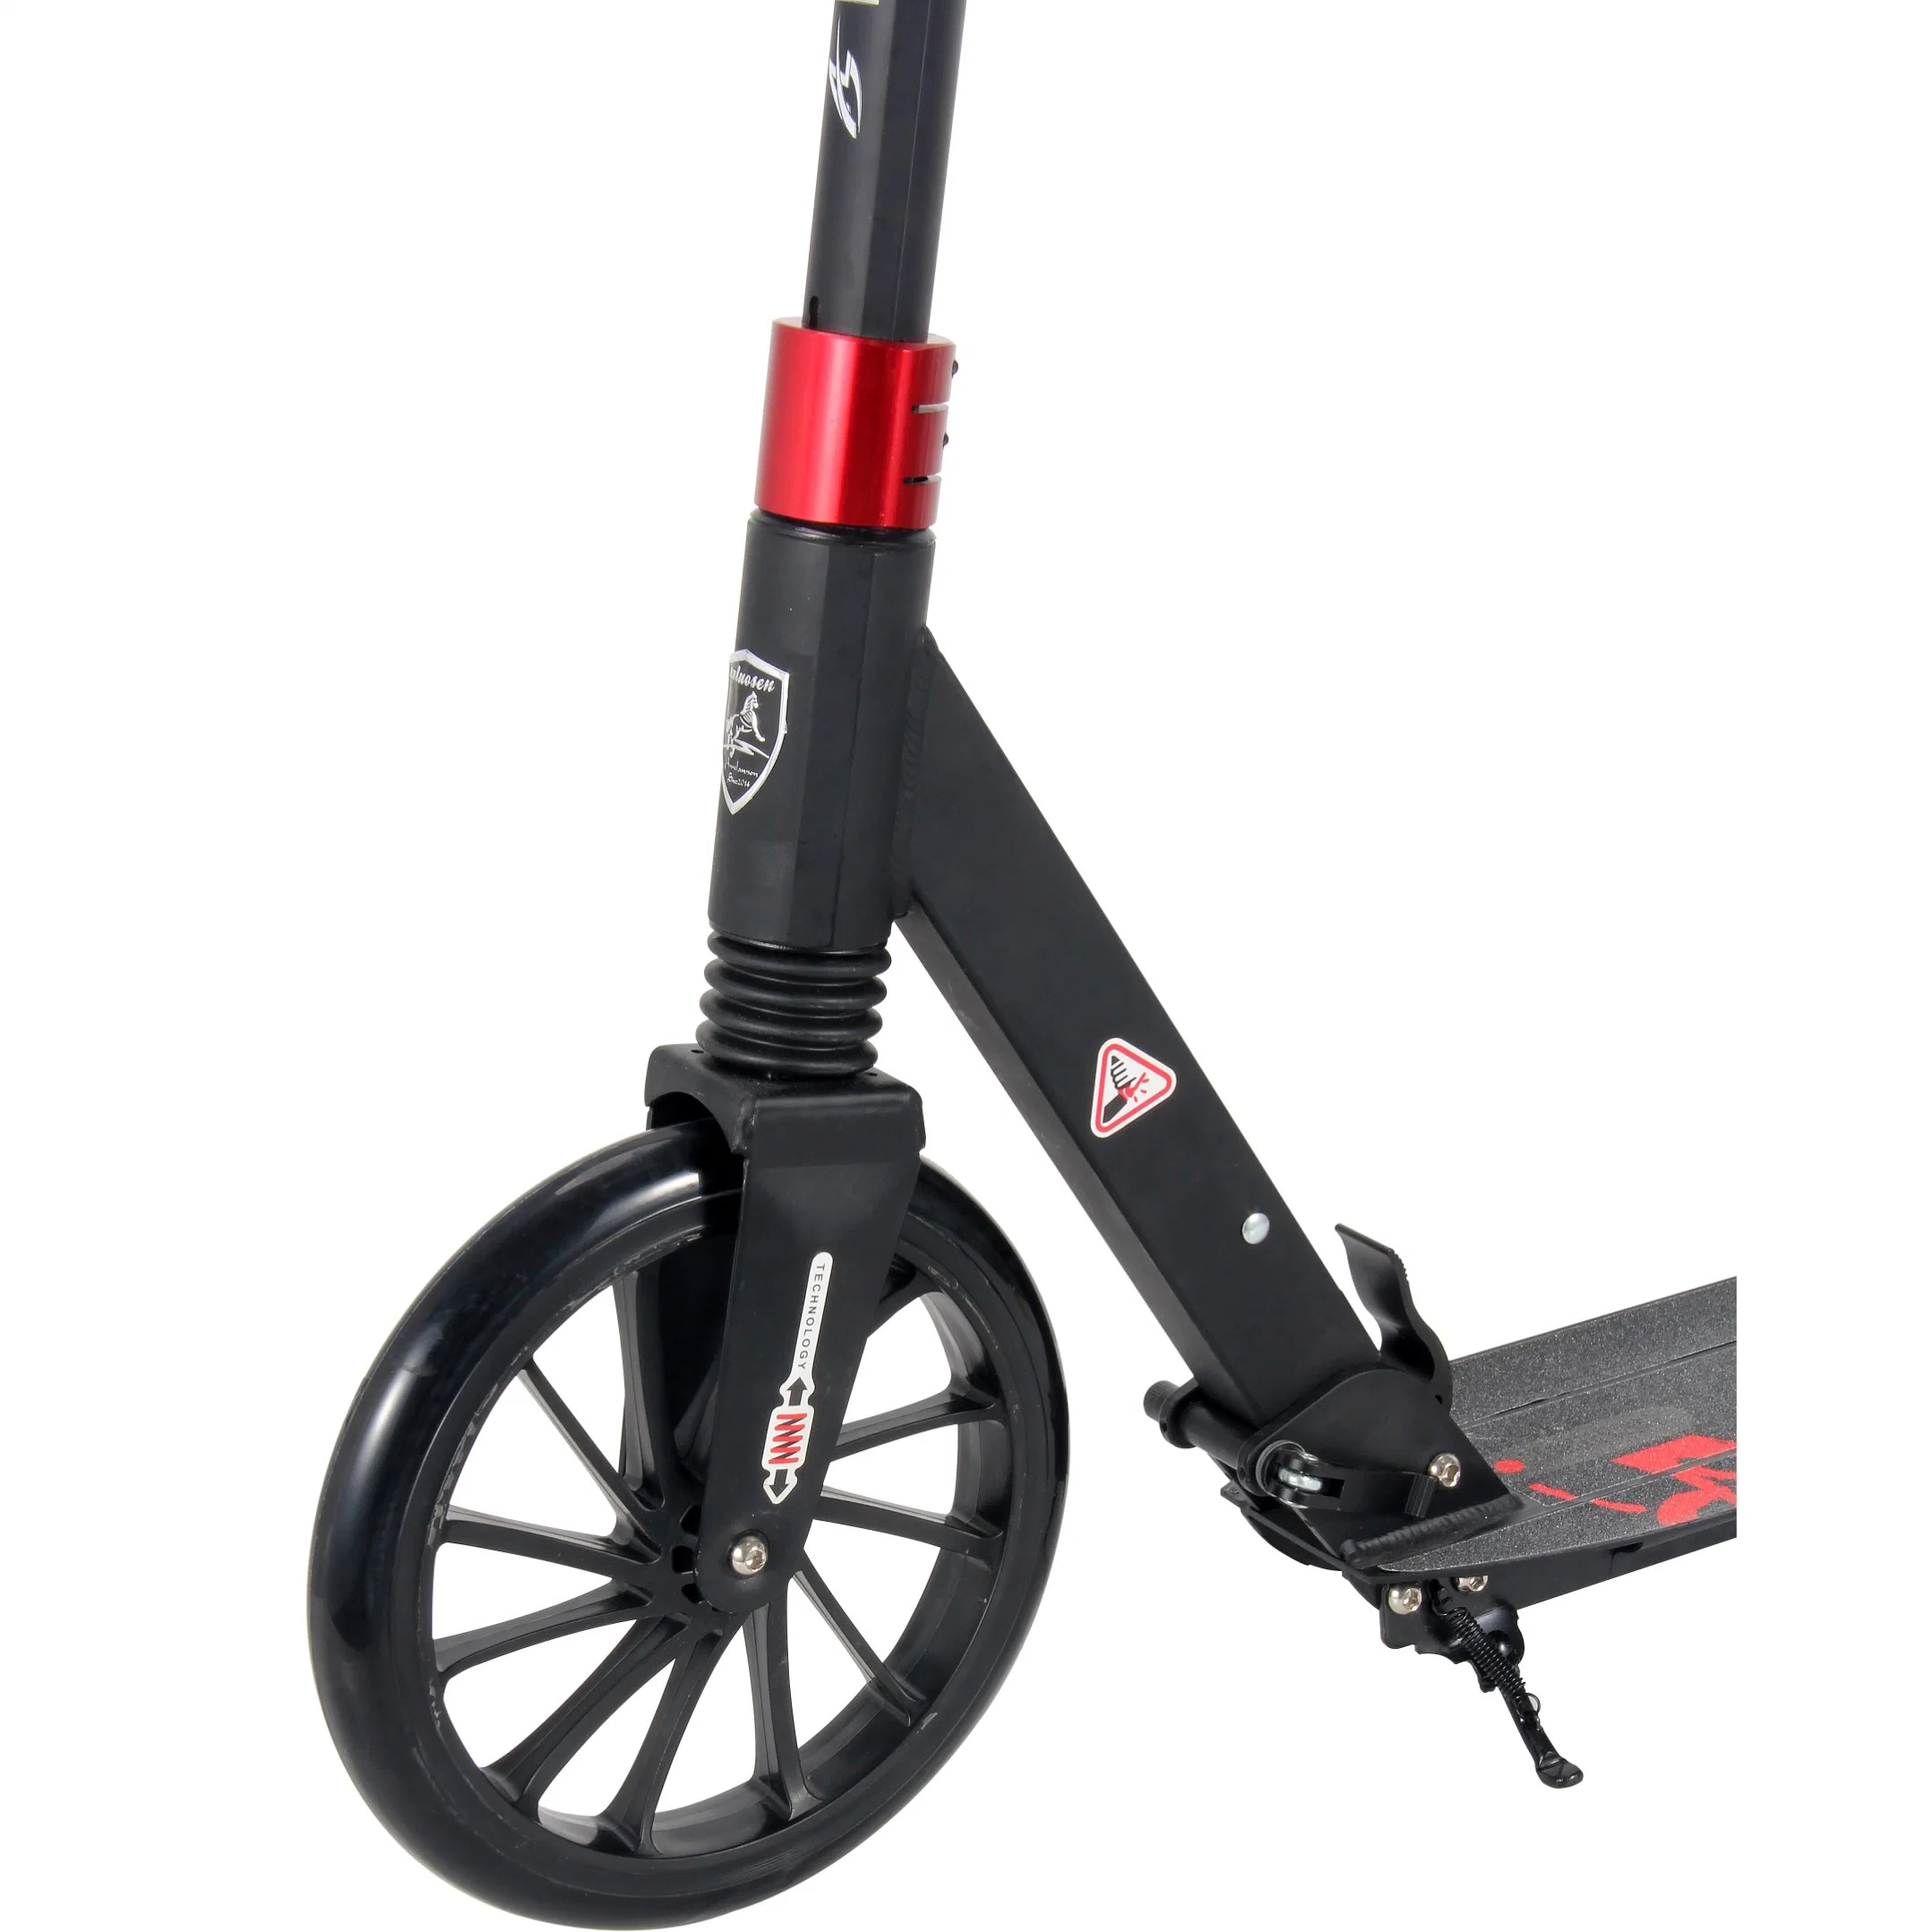 2022 Новый дизайн скутер Kick Размер колеса 180 мм цвета и. Логотип можно настроить